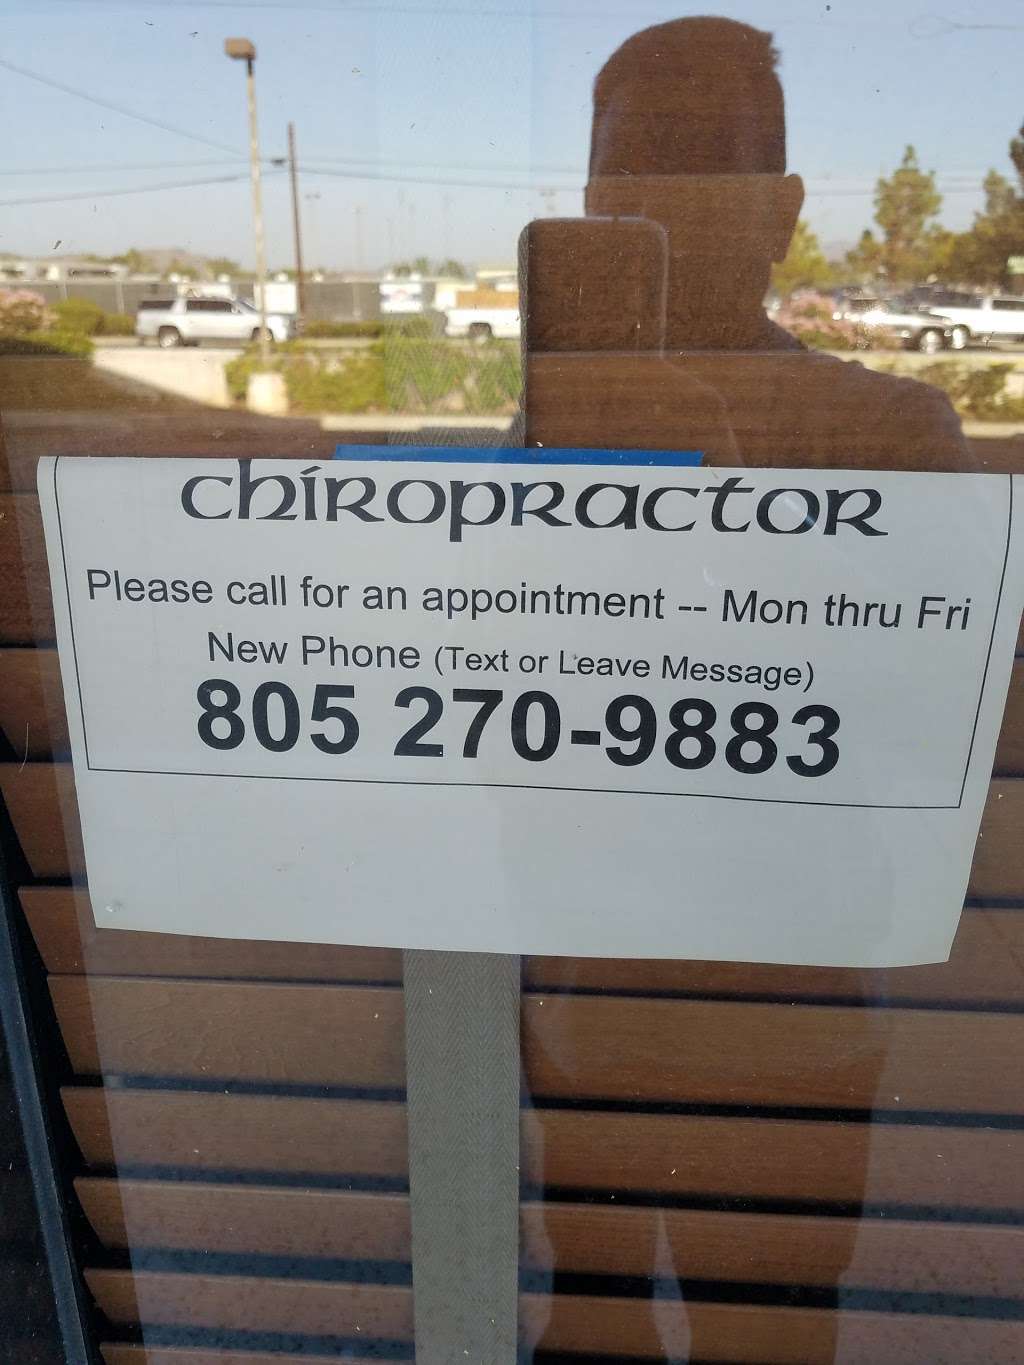 Davis Chiropractic: Davis Matt DC | 2220 N Moorpark Rd # 102, Thousand Oaks, CA 91360, USA | Phone: (805) 495-1975